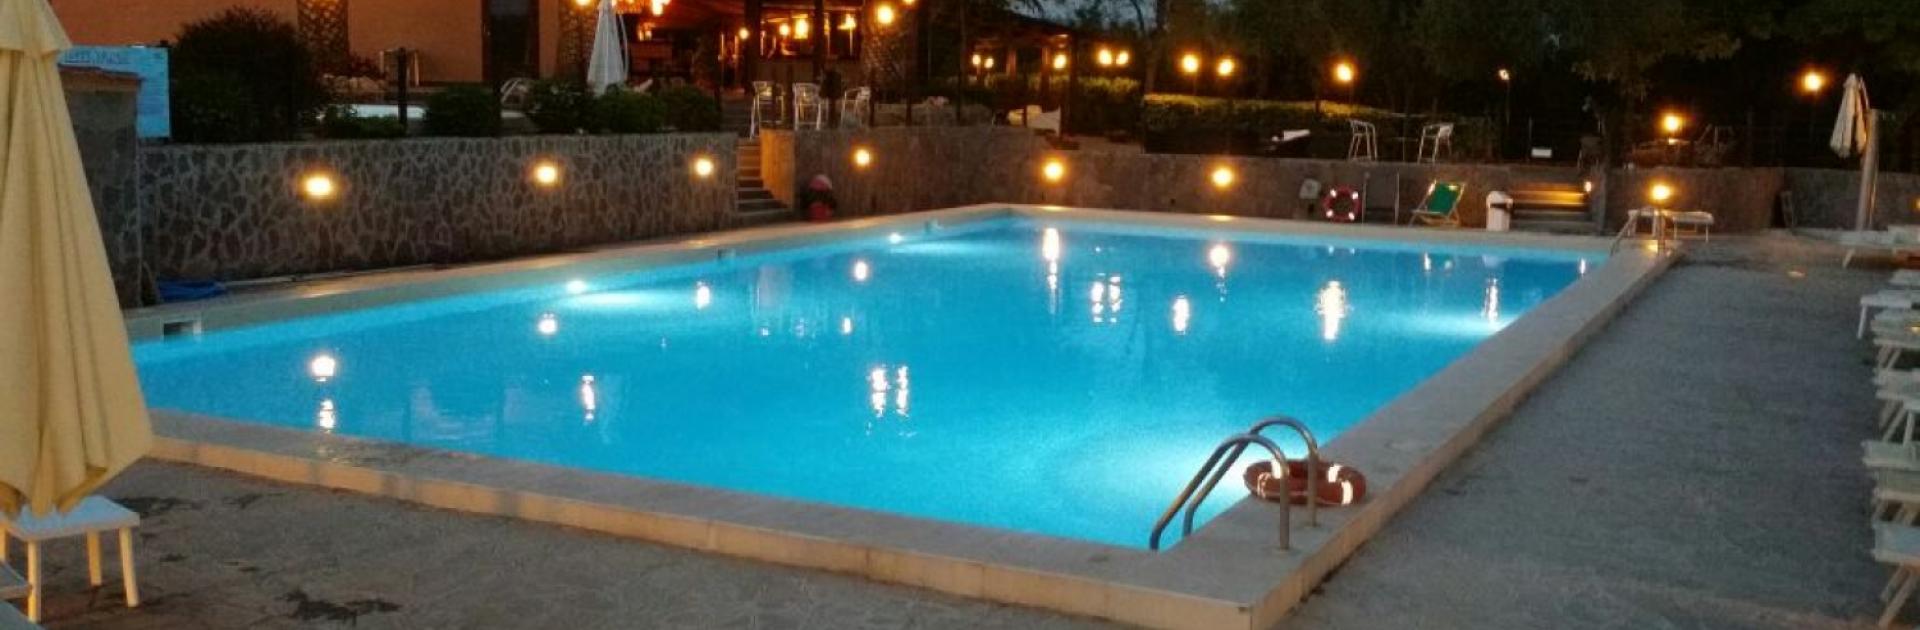 Belle piscine au crépuscule avec des lumières et des palmiers en arrière-plan.